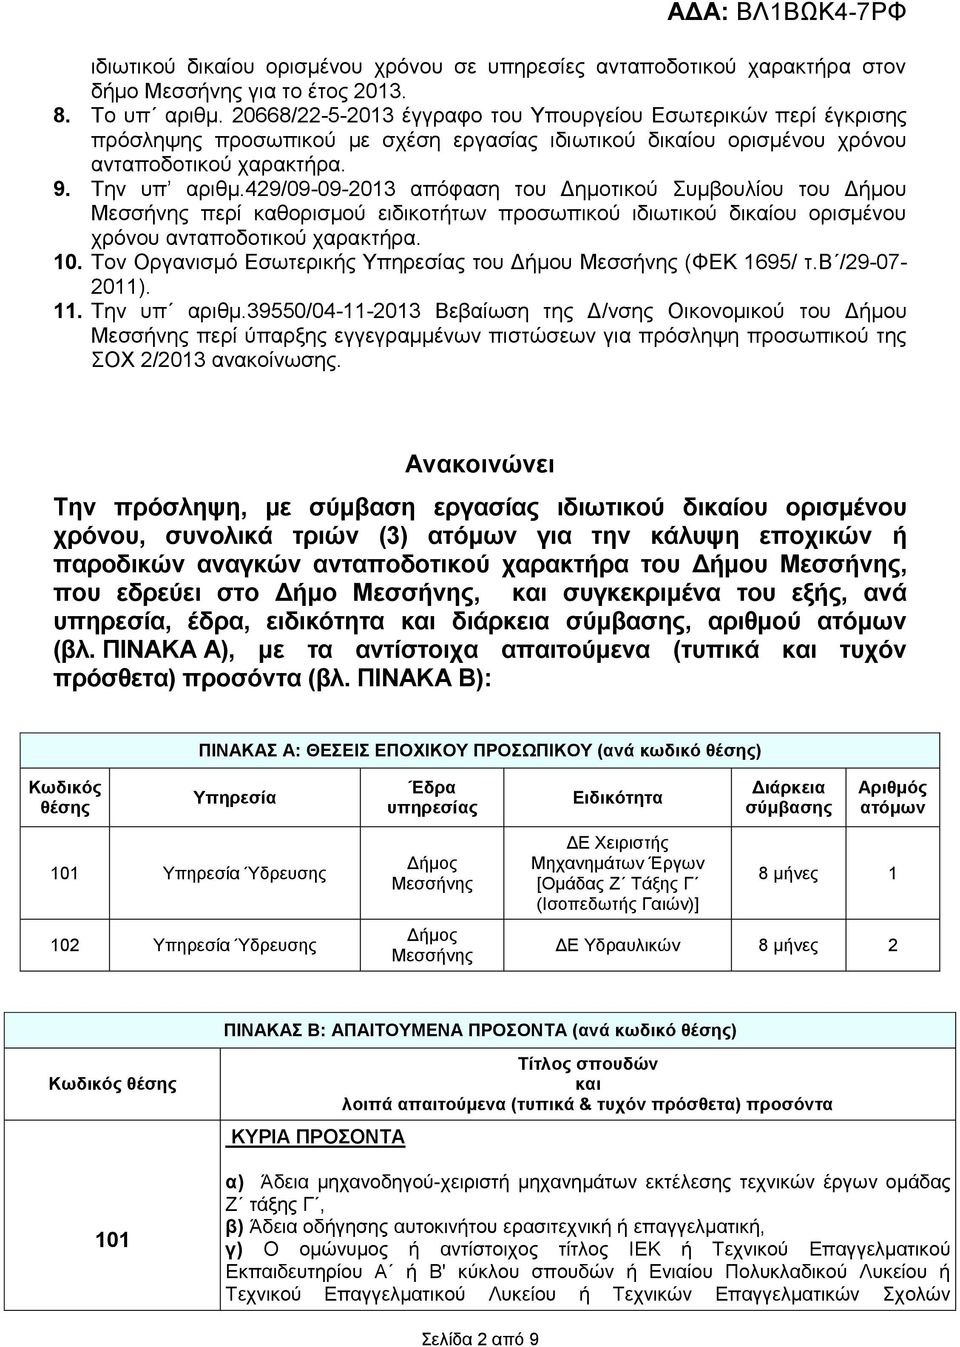 429/09-09-2013 απόφαση του Δημοτικού Συμβουλίου του Δήμου Μεσσήνης περί καθορισμού ειδικοτήτων προσωπικού ιδιωτικού δικαίου ορισμένου χρόνου ανταποδοτικού χαρακτήρα. 10.